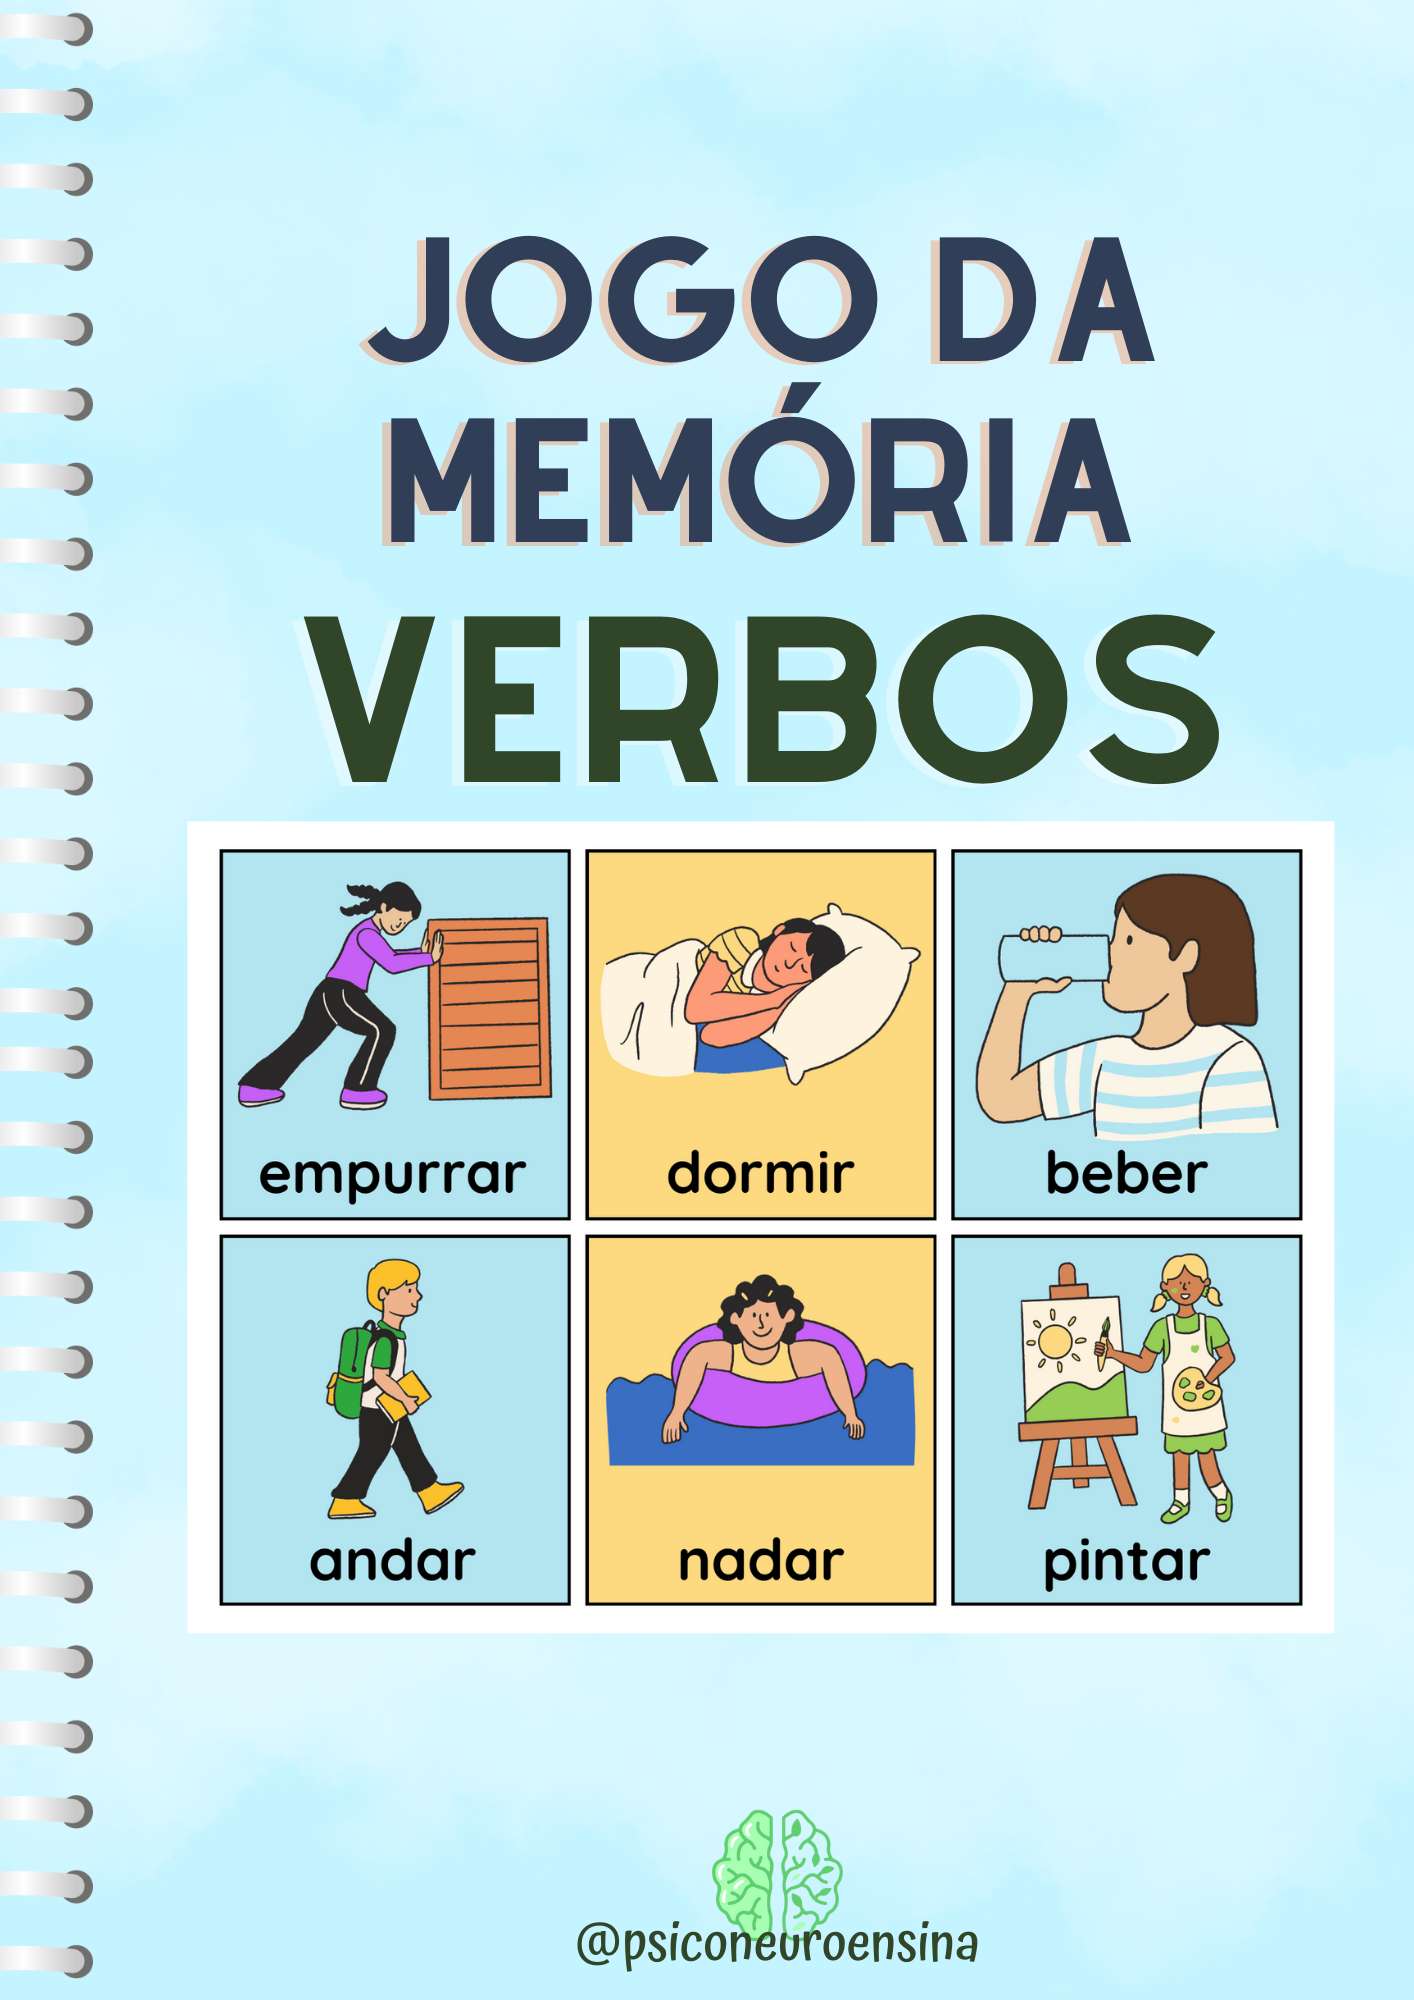 Jogo da memória com verbos no infinitivo